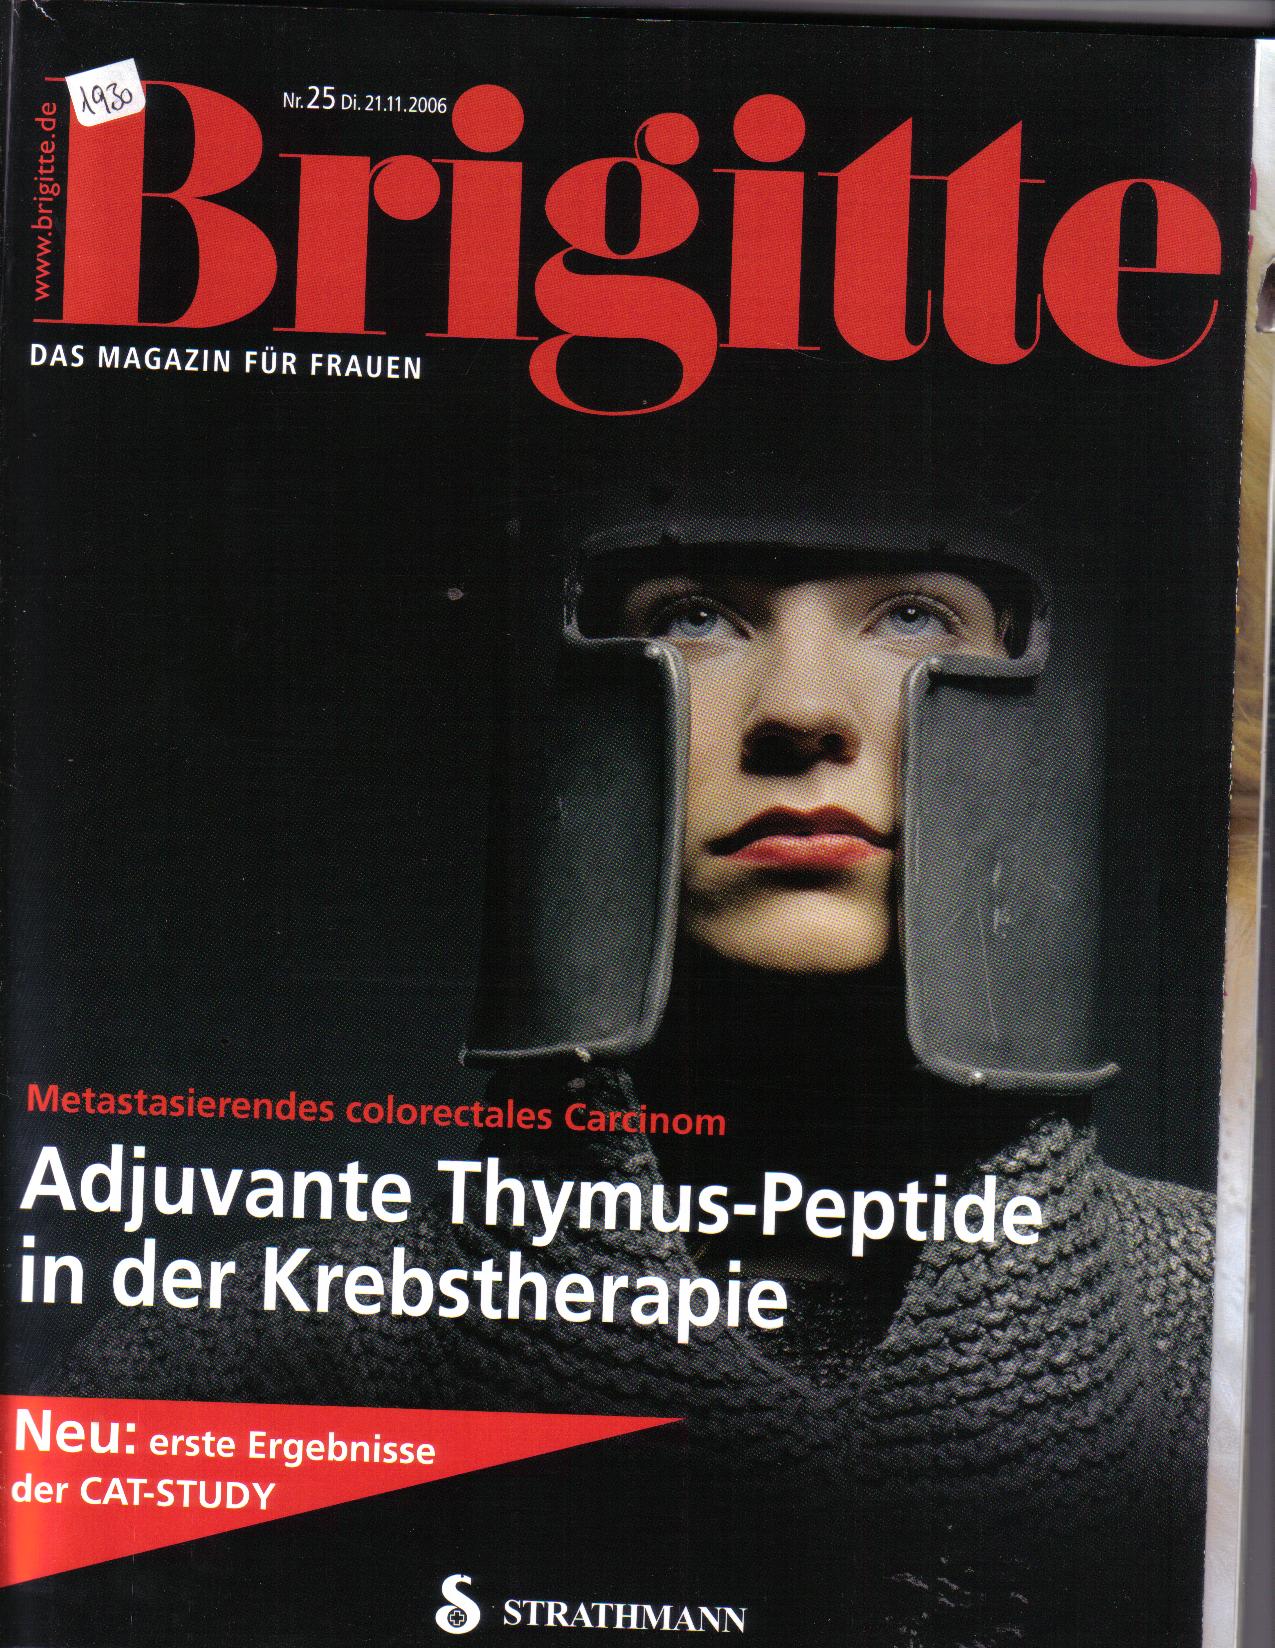 Brigitte 2006